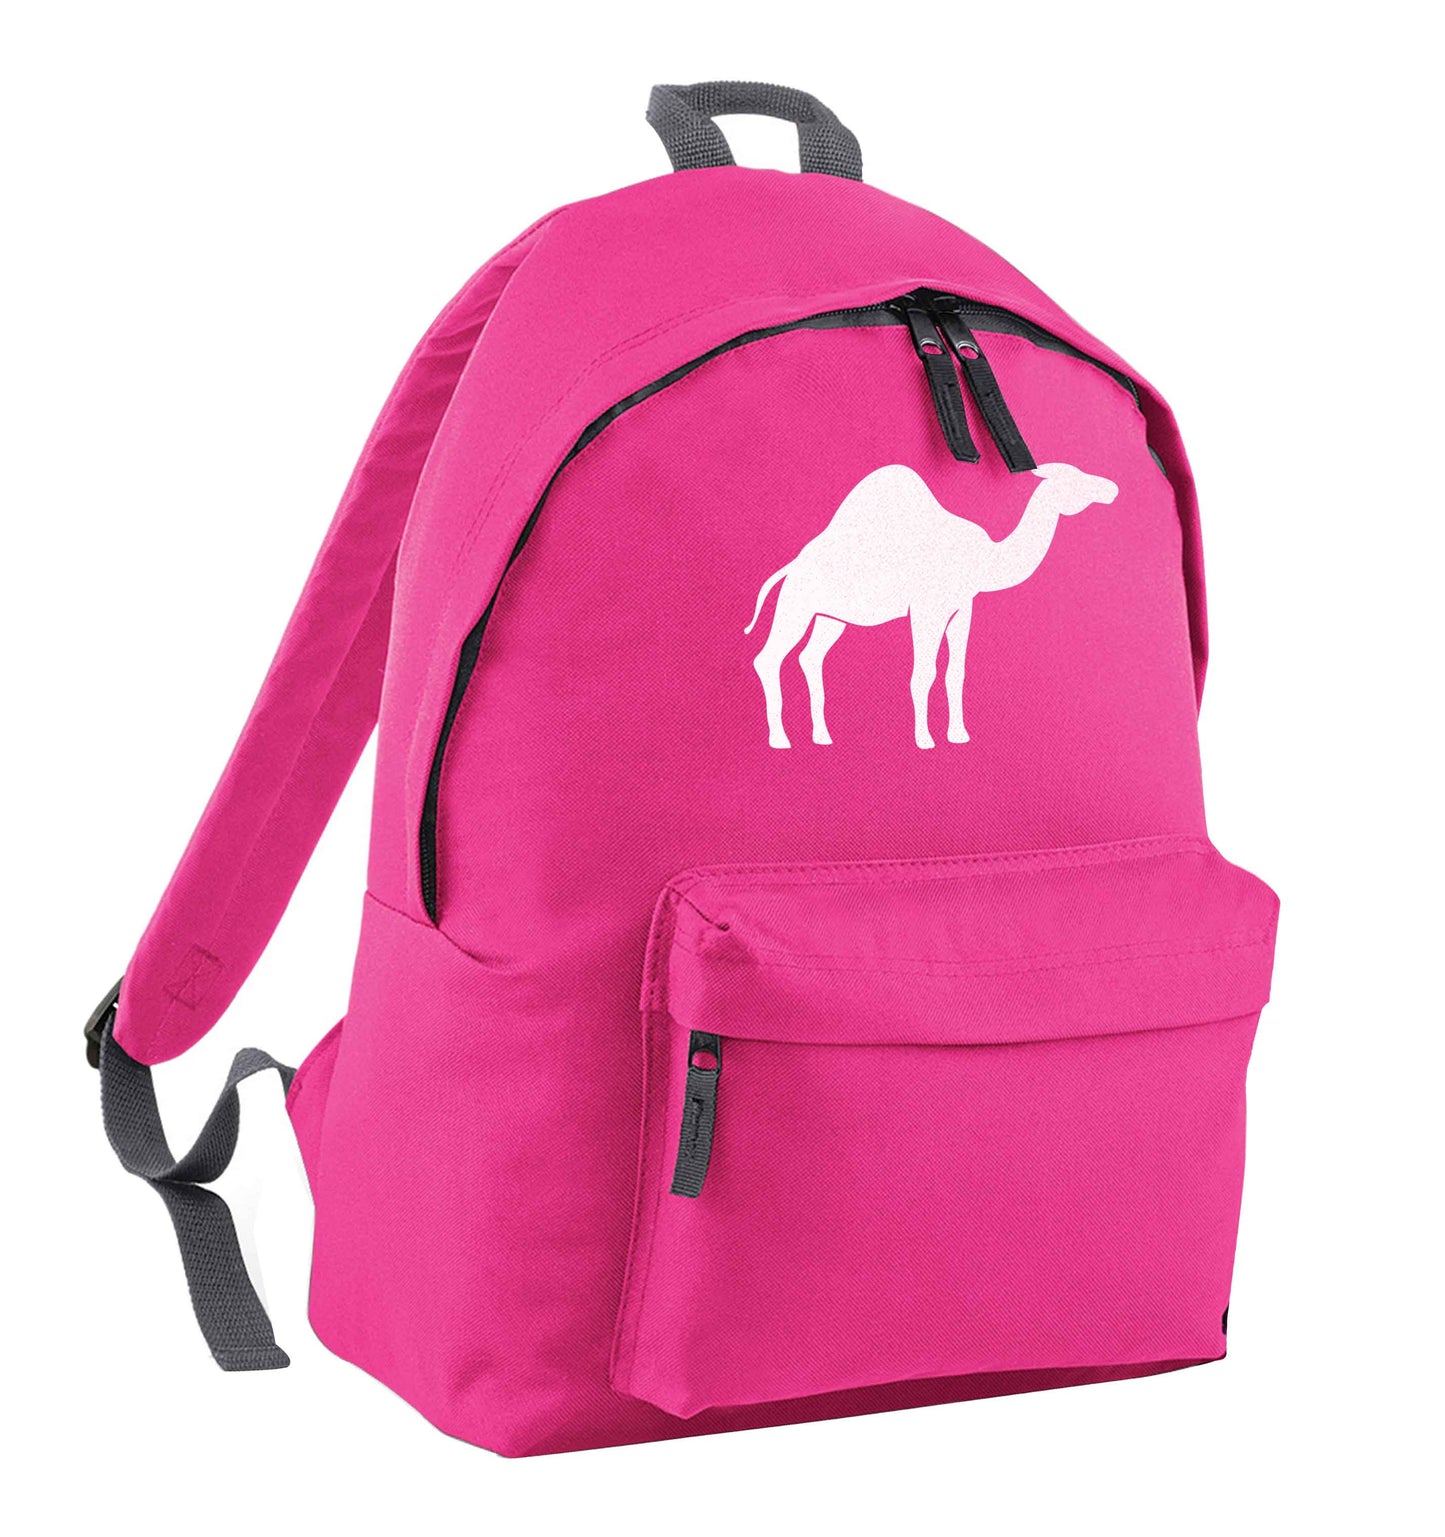 Blue camel pink children's backpack